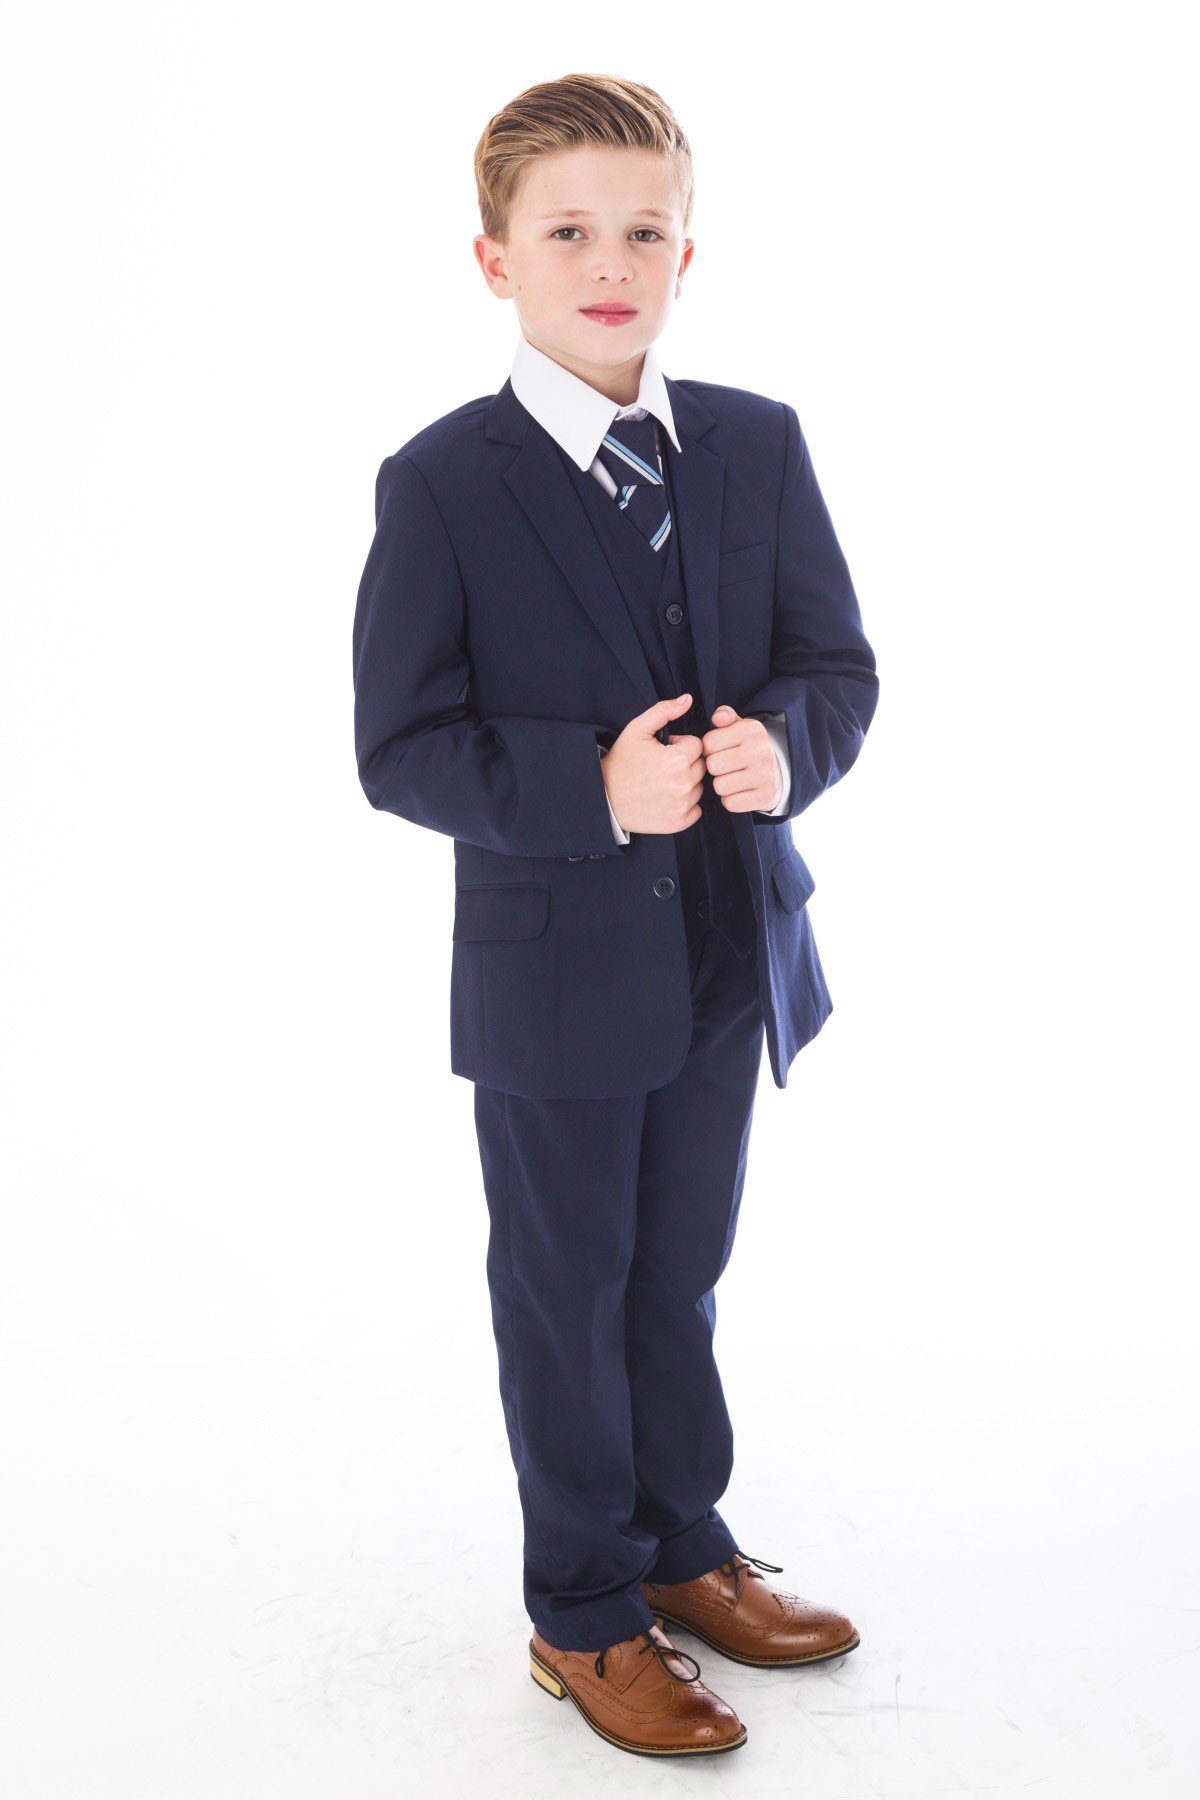 Melli-Trends Kinderanzug 5-teilig »Festlicher Jungen Anzug, Kommunionanzug  in Dunkelblau« (Set: Sakko, Hose, Weste, Hemd und Krawatte, 5-Teilig)  online kaufen | OTTO